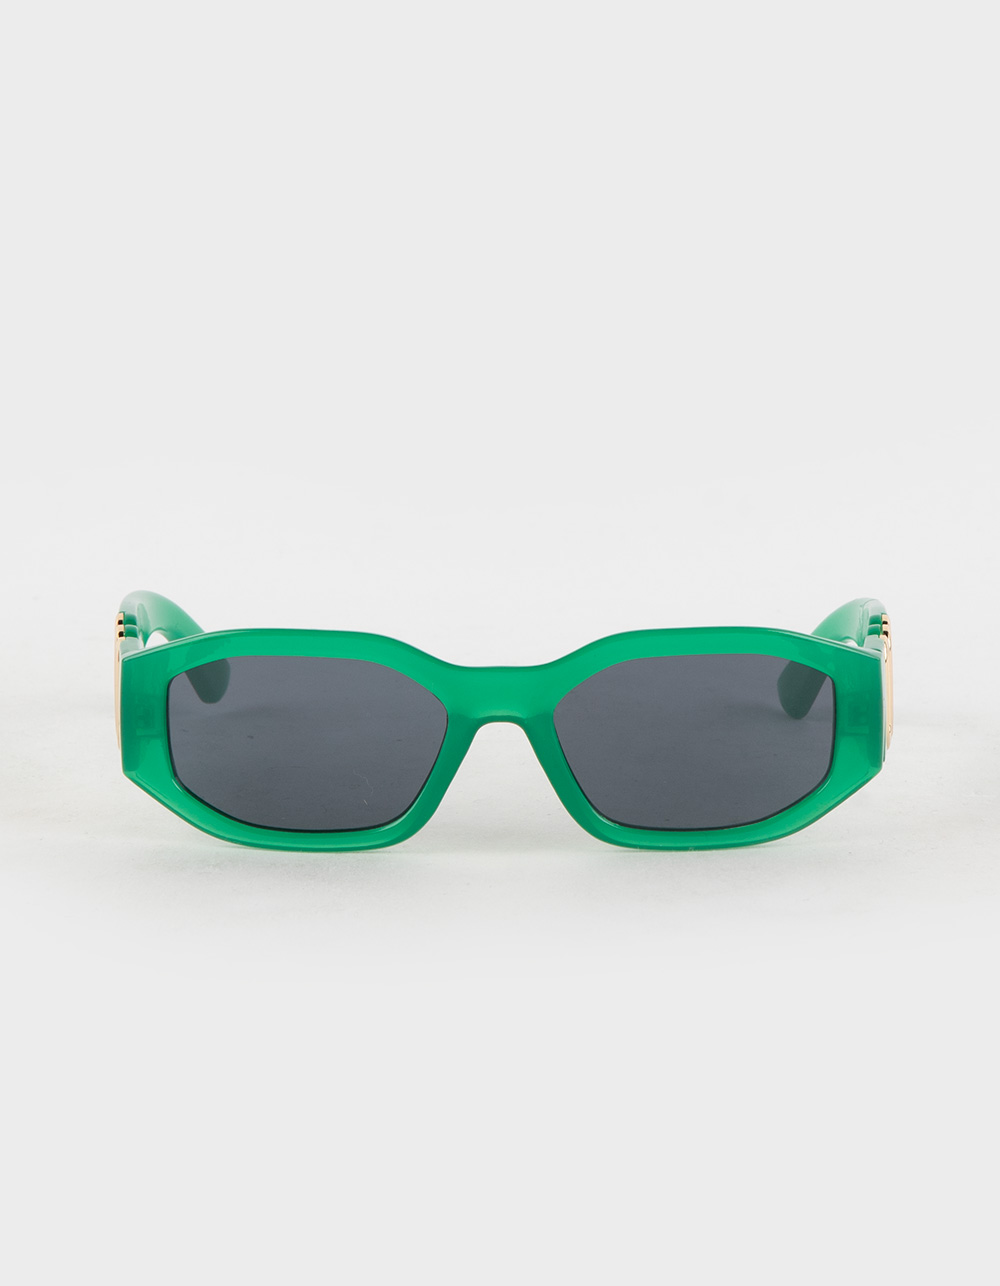 Rsq Nicco Hexagon Plastic Sunglasses - Green - One Size